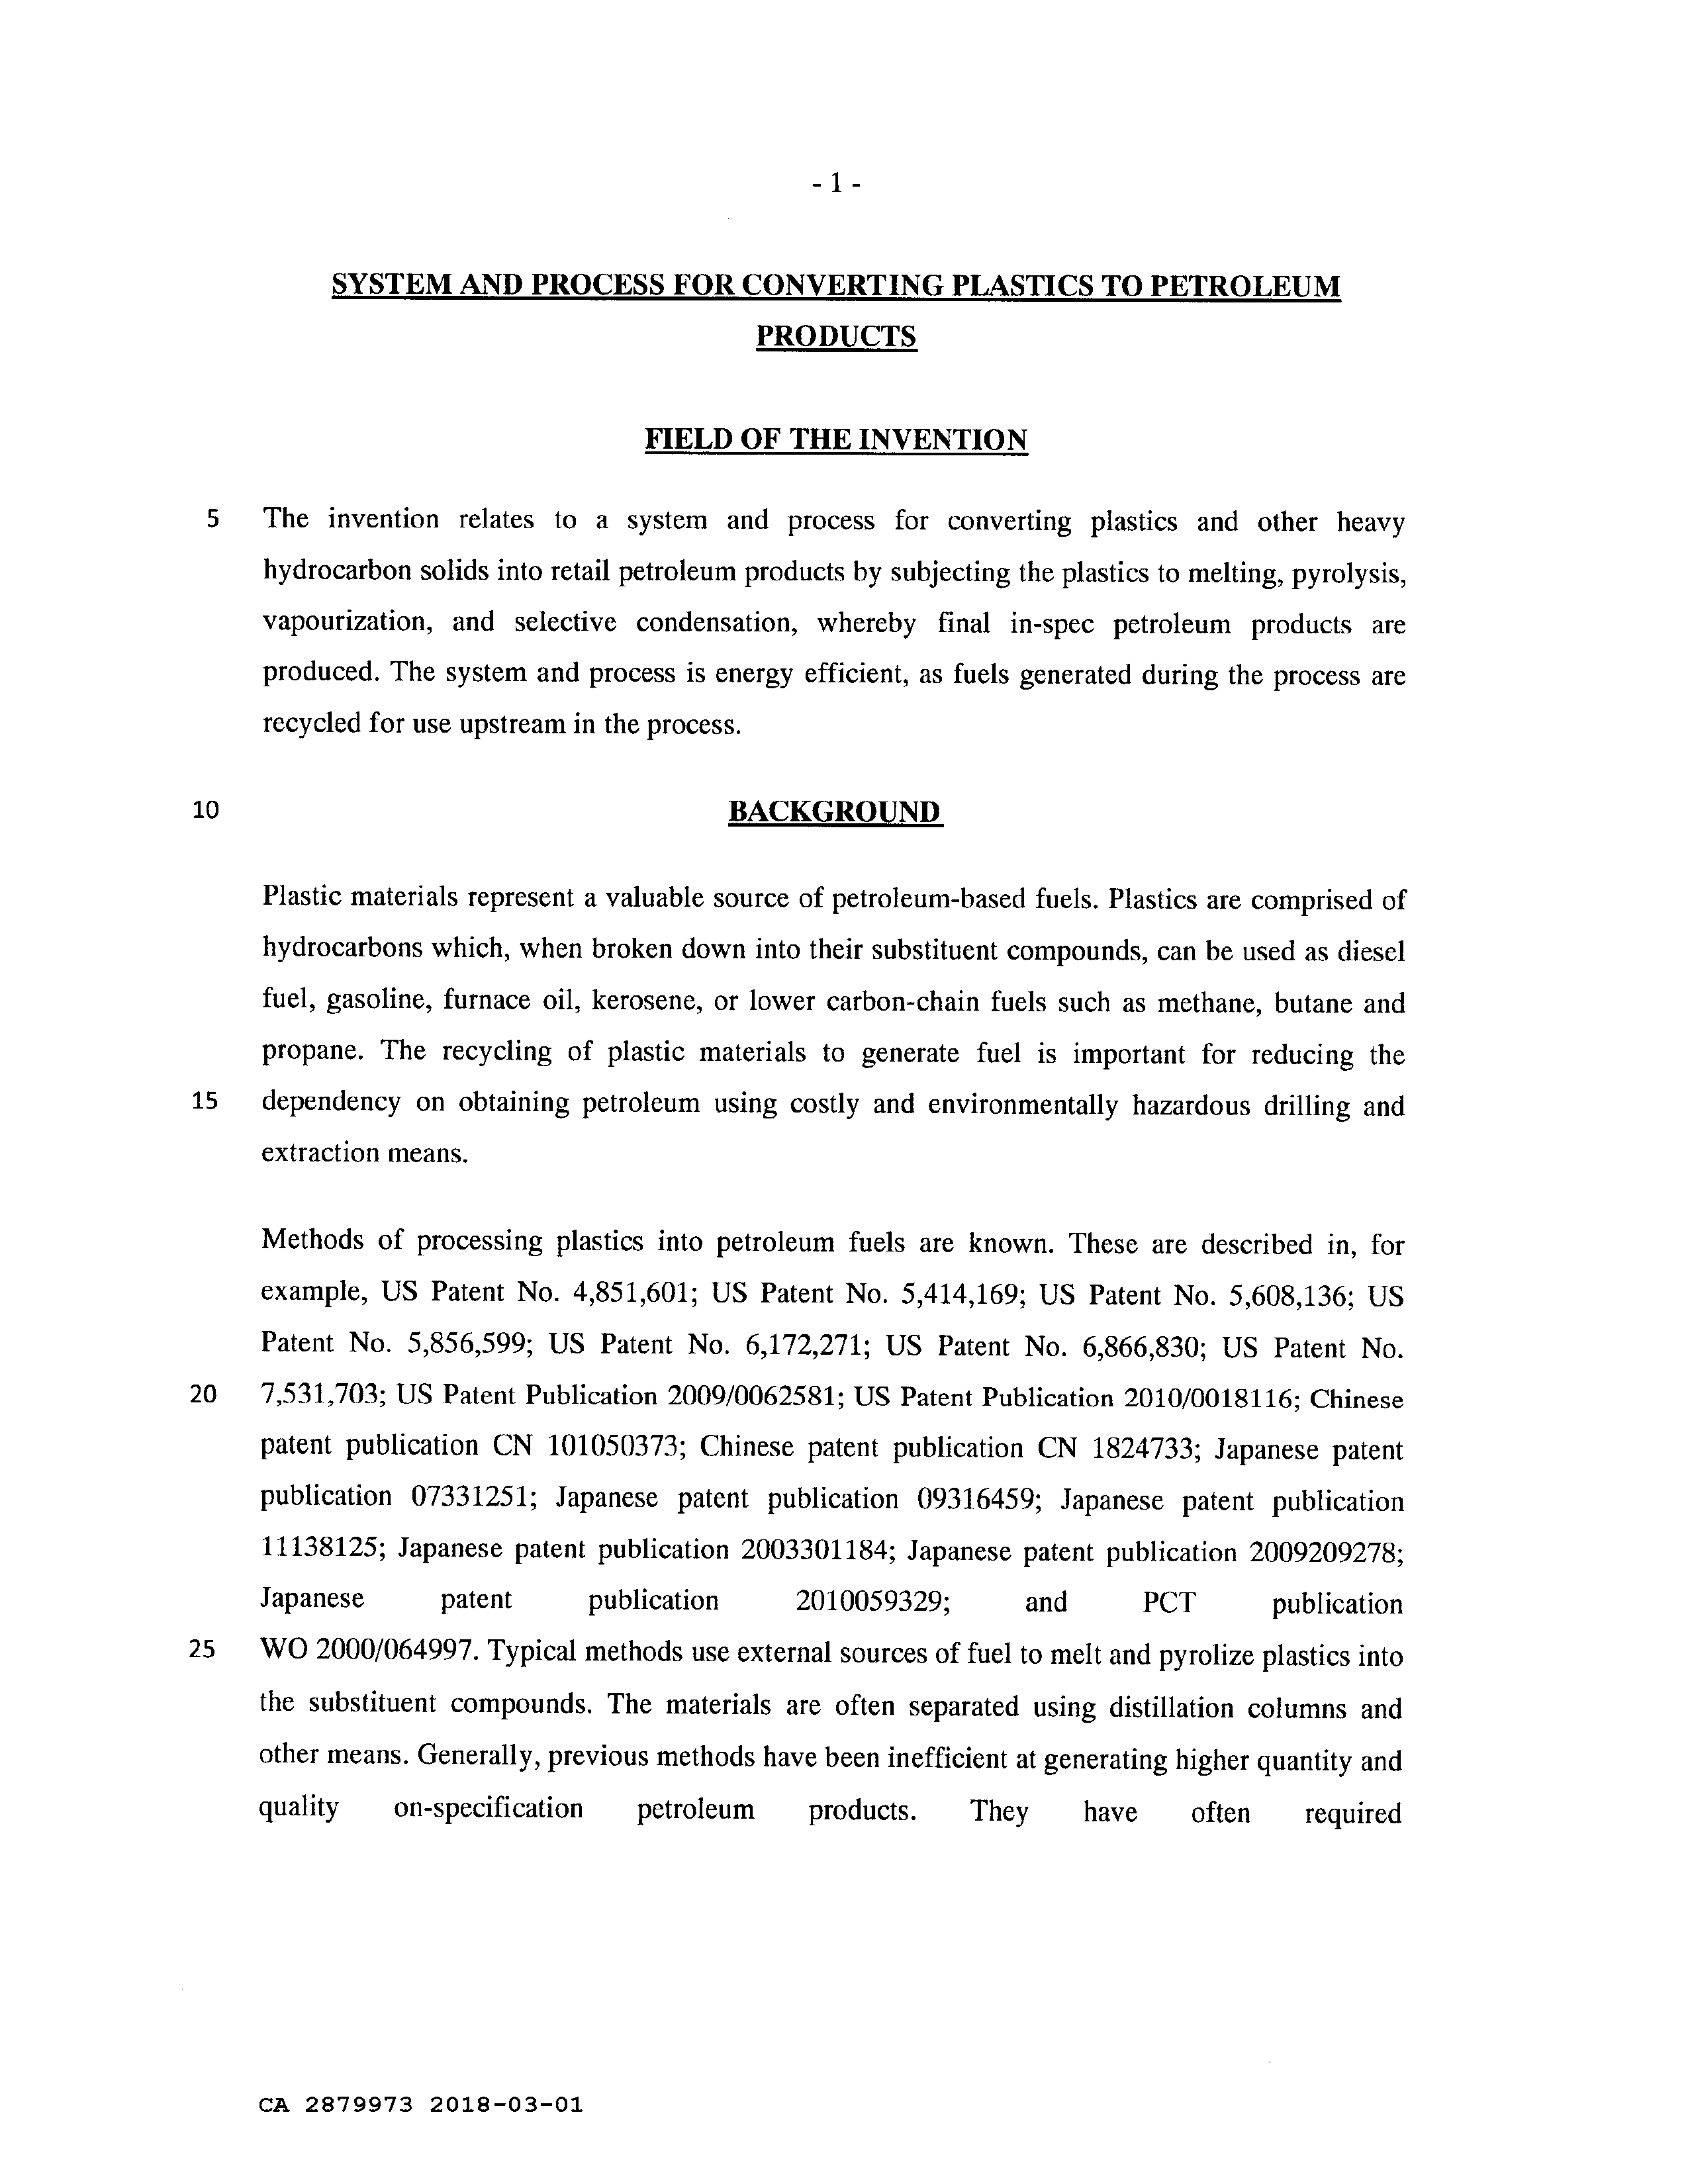 Canadian Patent Document 2879973. Description 20180301. Image 1 of 12